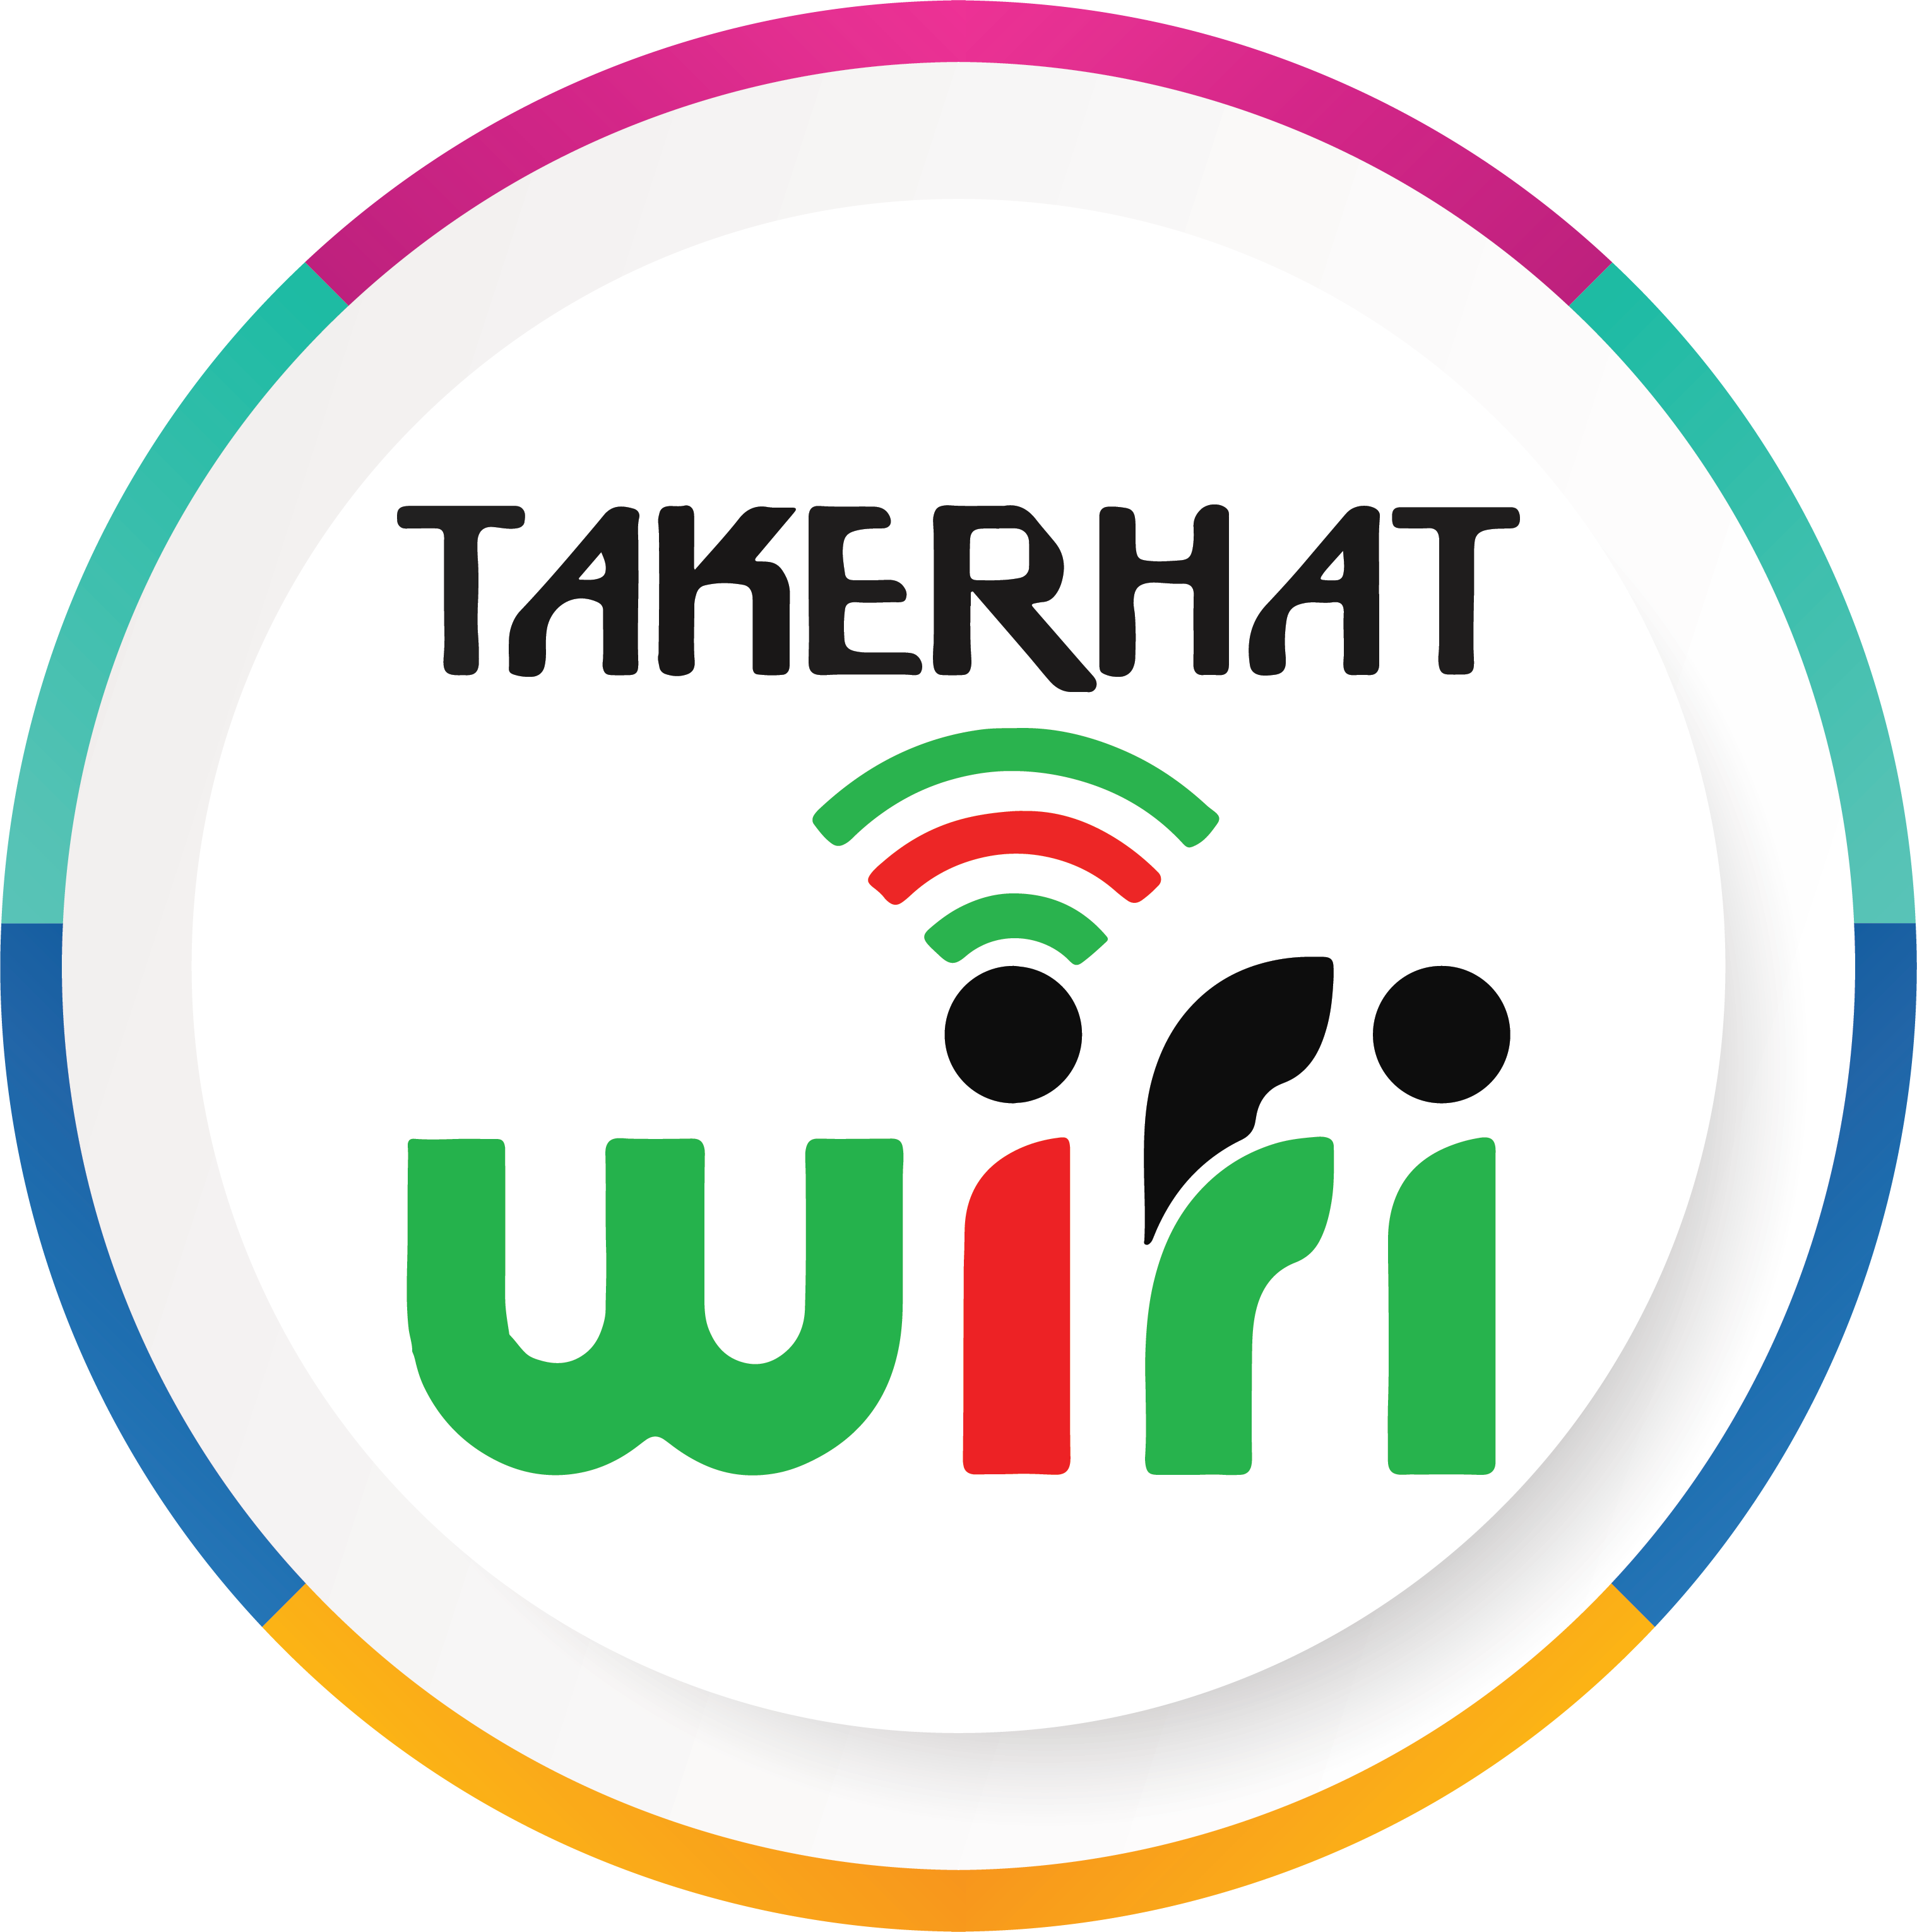 Takerhat WiFi-logo